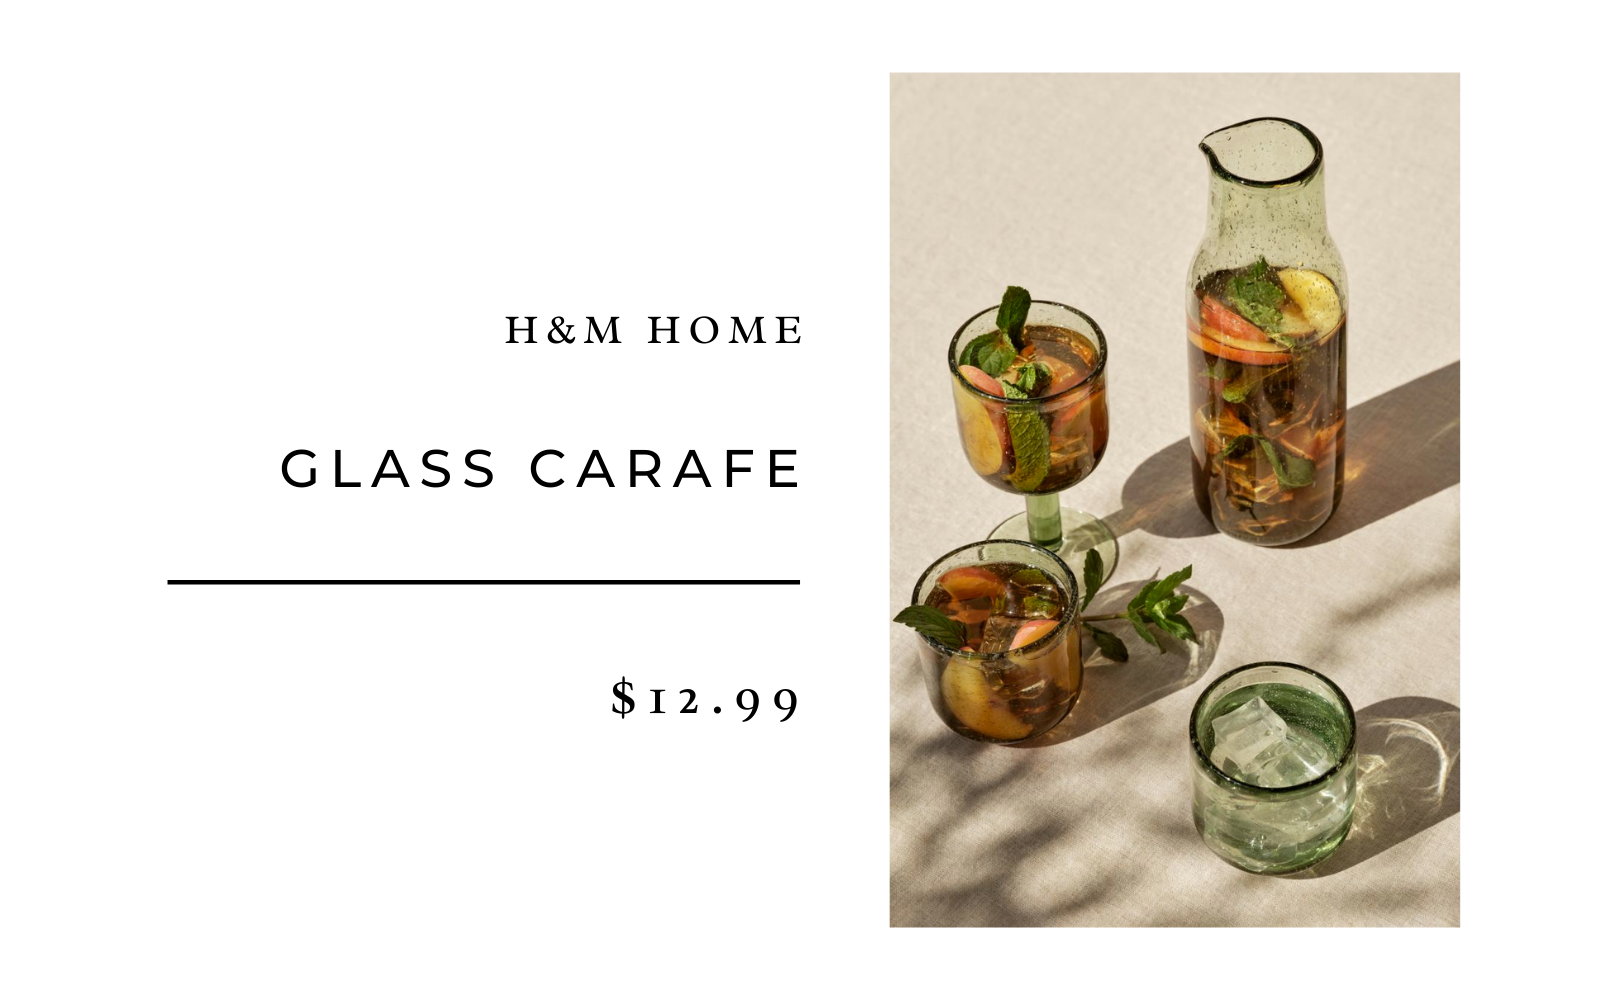 h&m Home Glass carafe